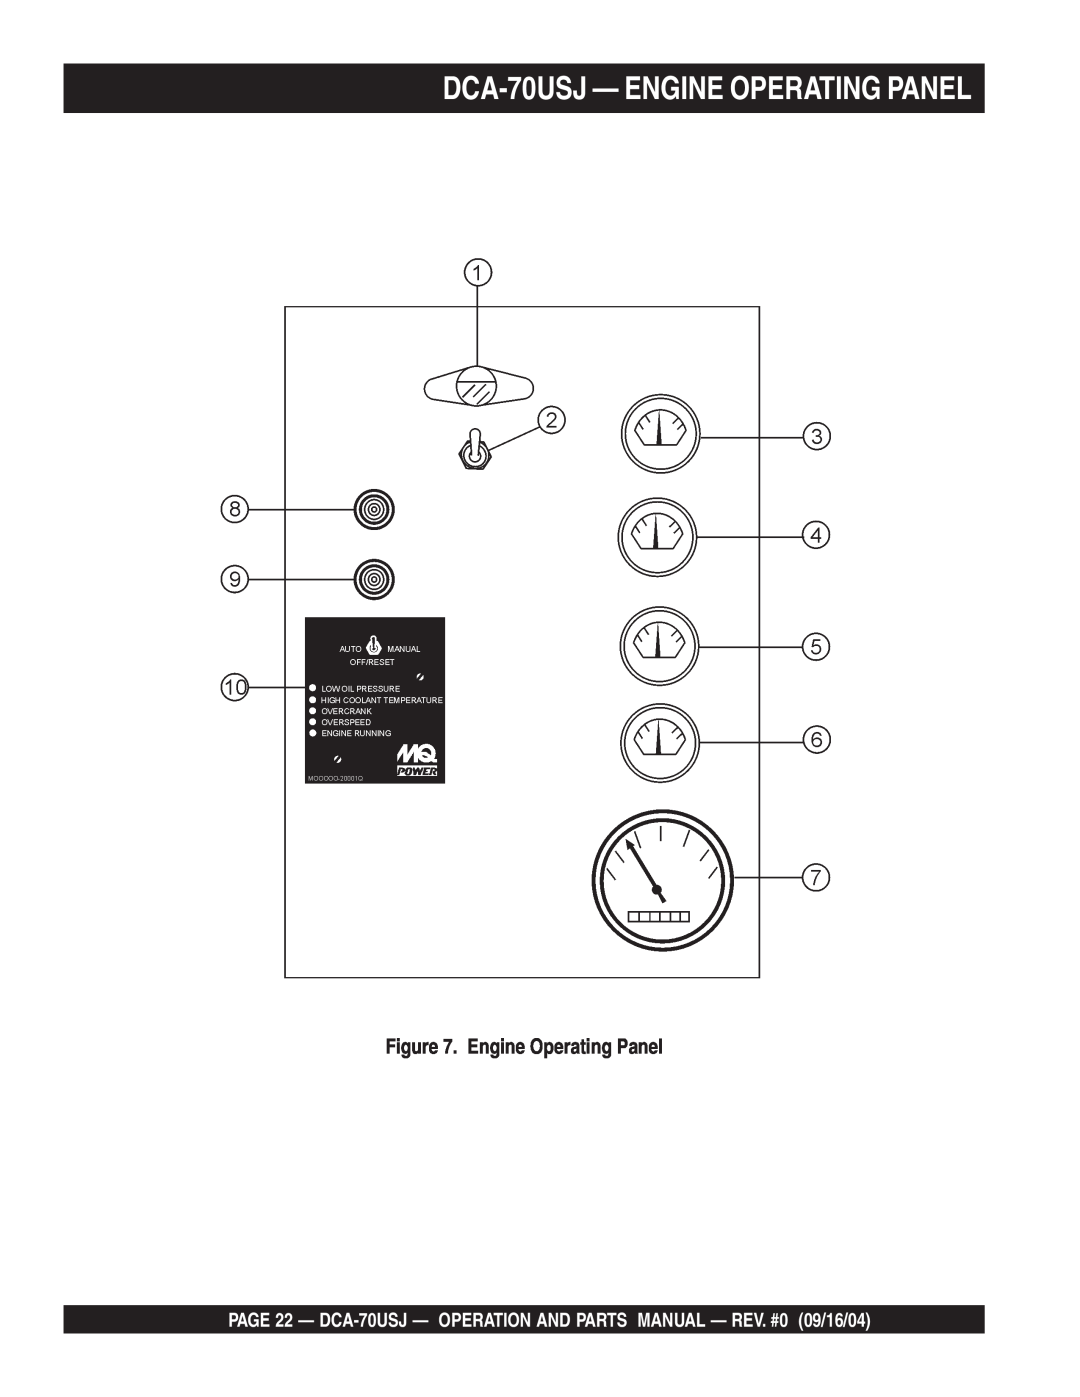 Multiquip dca-70usj operation manual DCA-70USJ— ENGINE OPERATING PANEL, Engine Operating Panel 